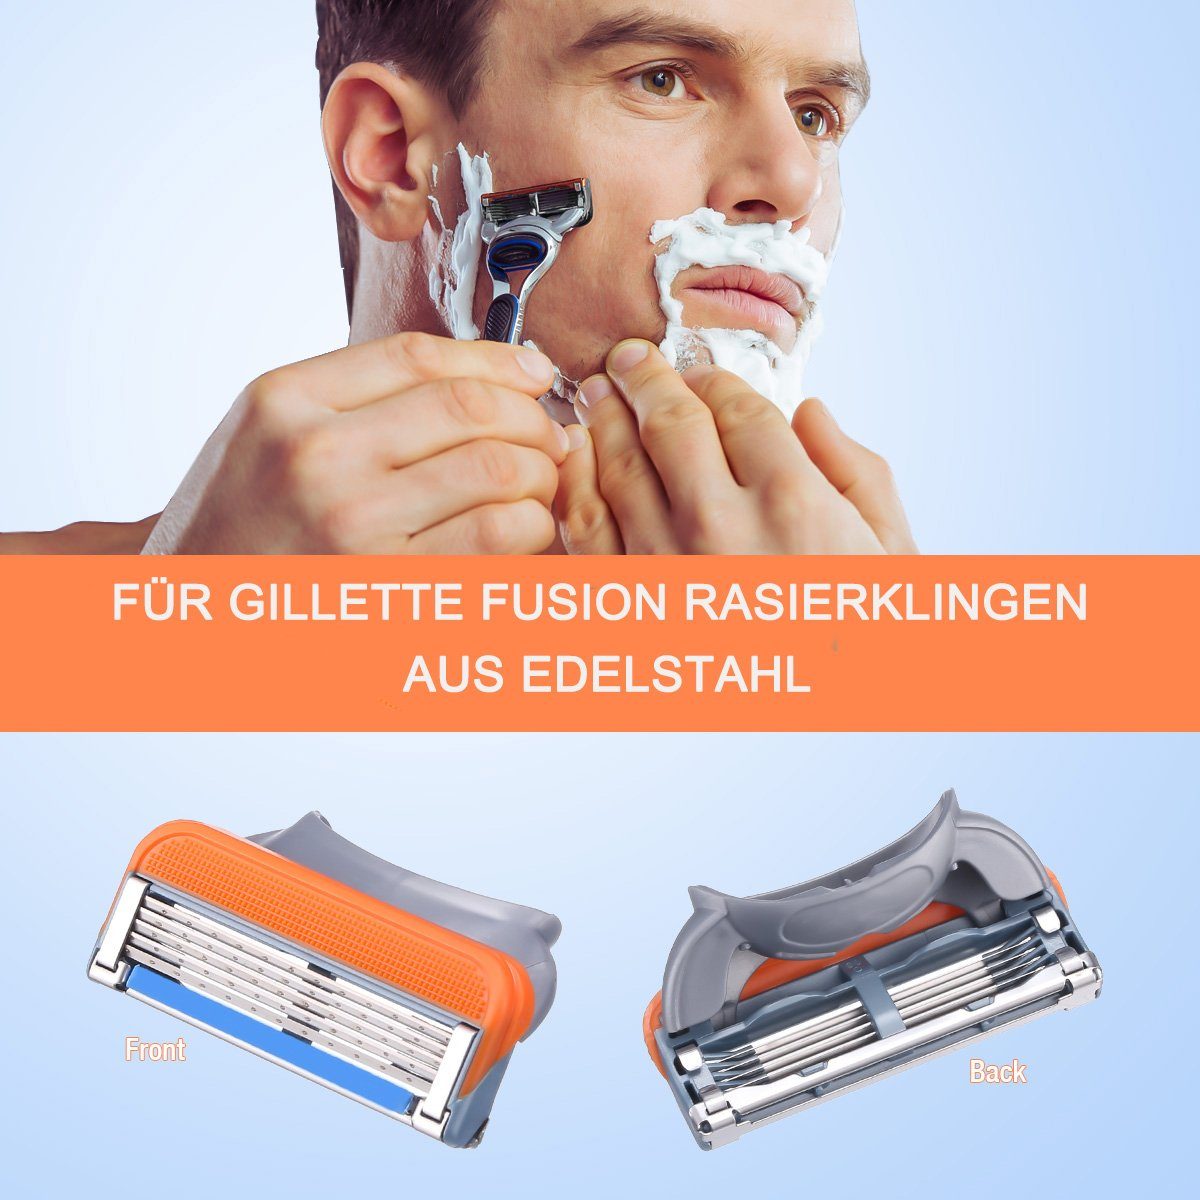 Housmile Rasierklingen 24-tlg., Edelstahl 24 Fusion Gillette Rasierklingen, Ersatzklingen Nassrasierer Herren,für